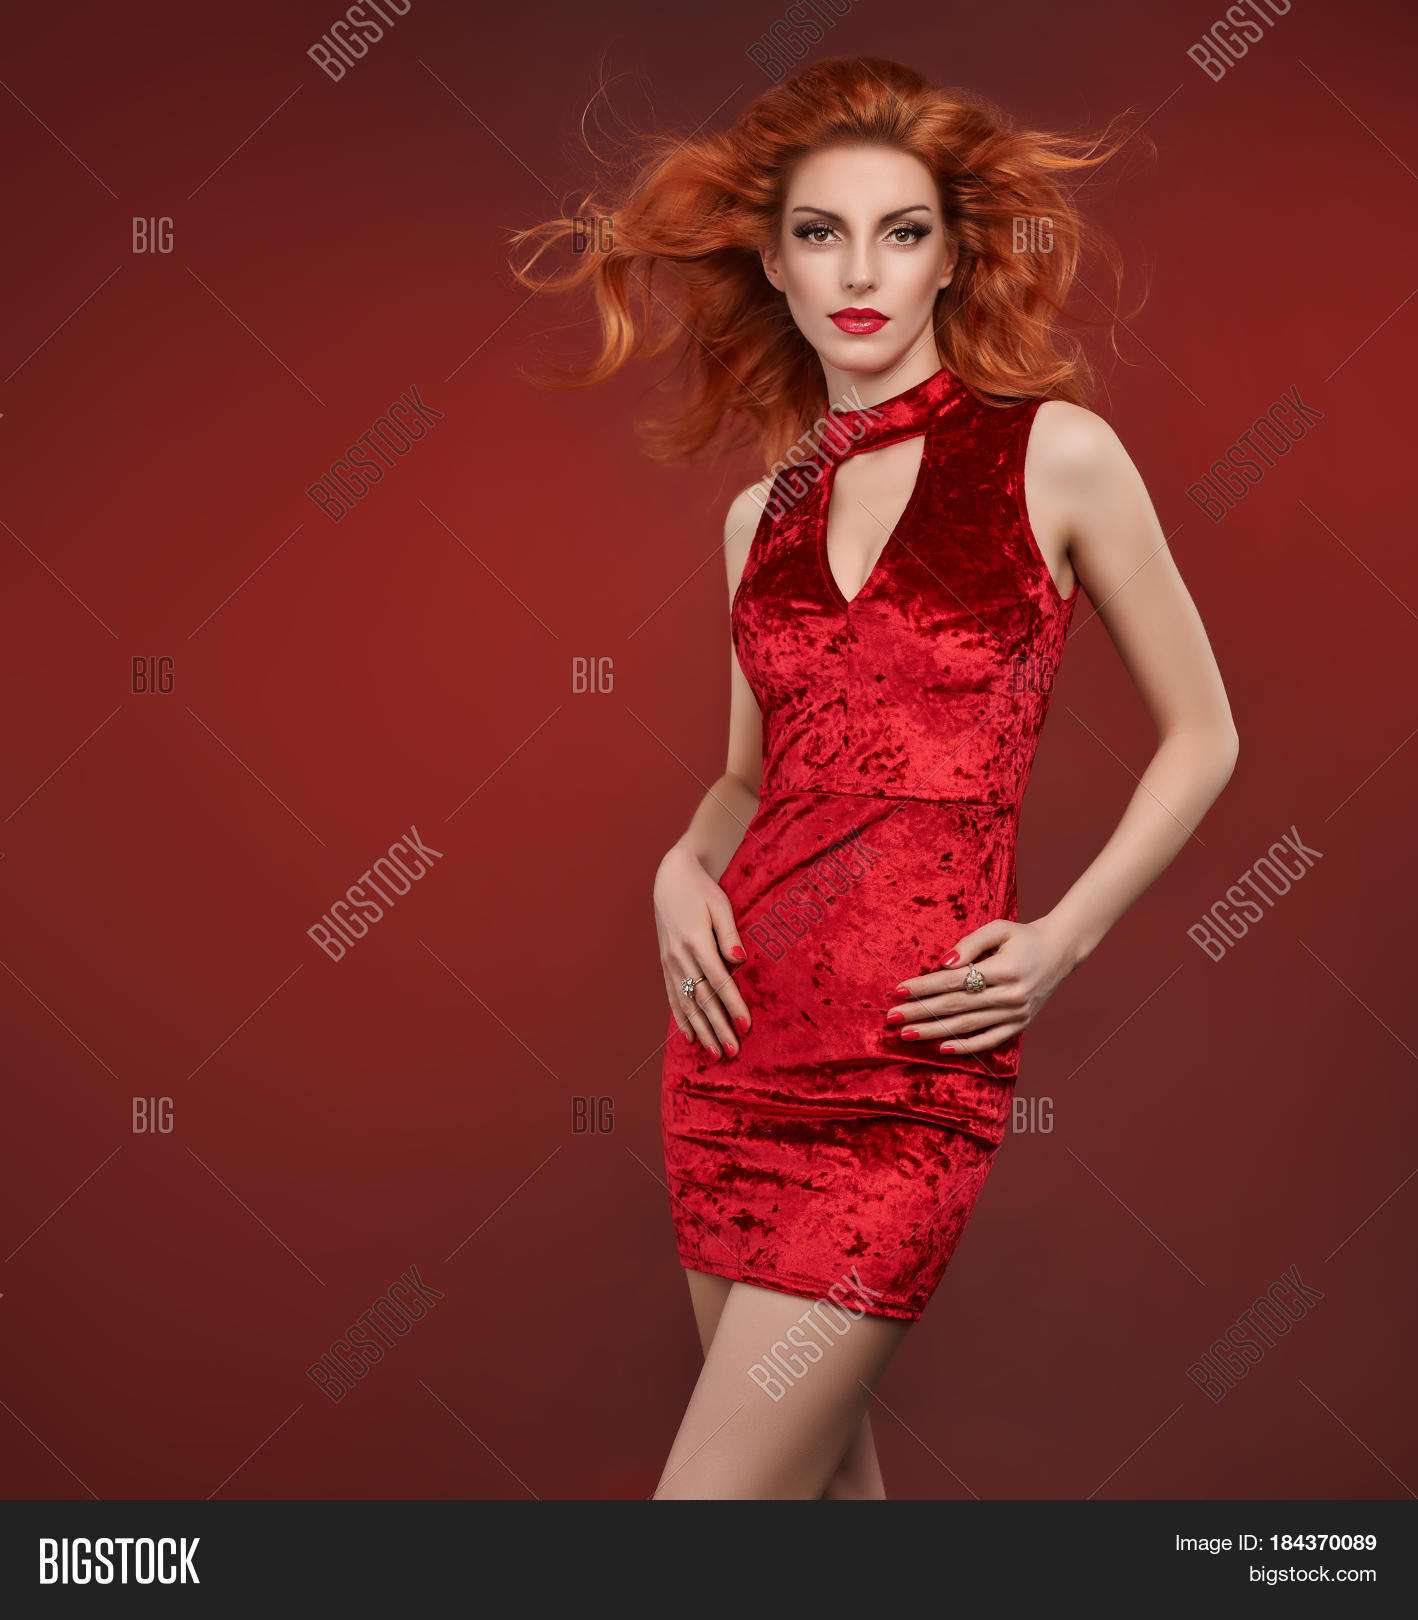 Fashion Beauty Woman Glamour Red Image & Photo | Bigstock